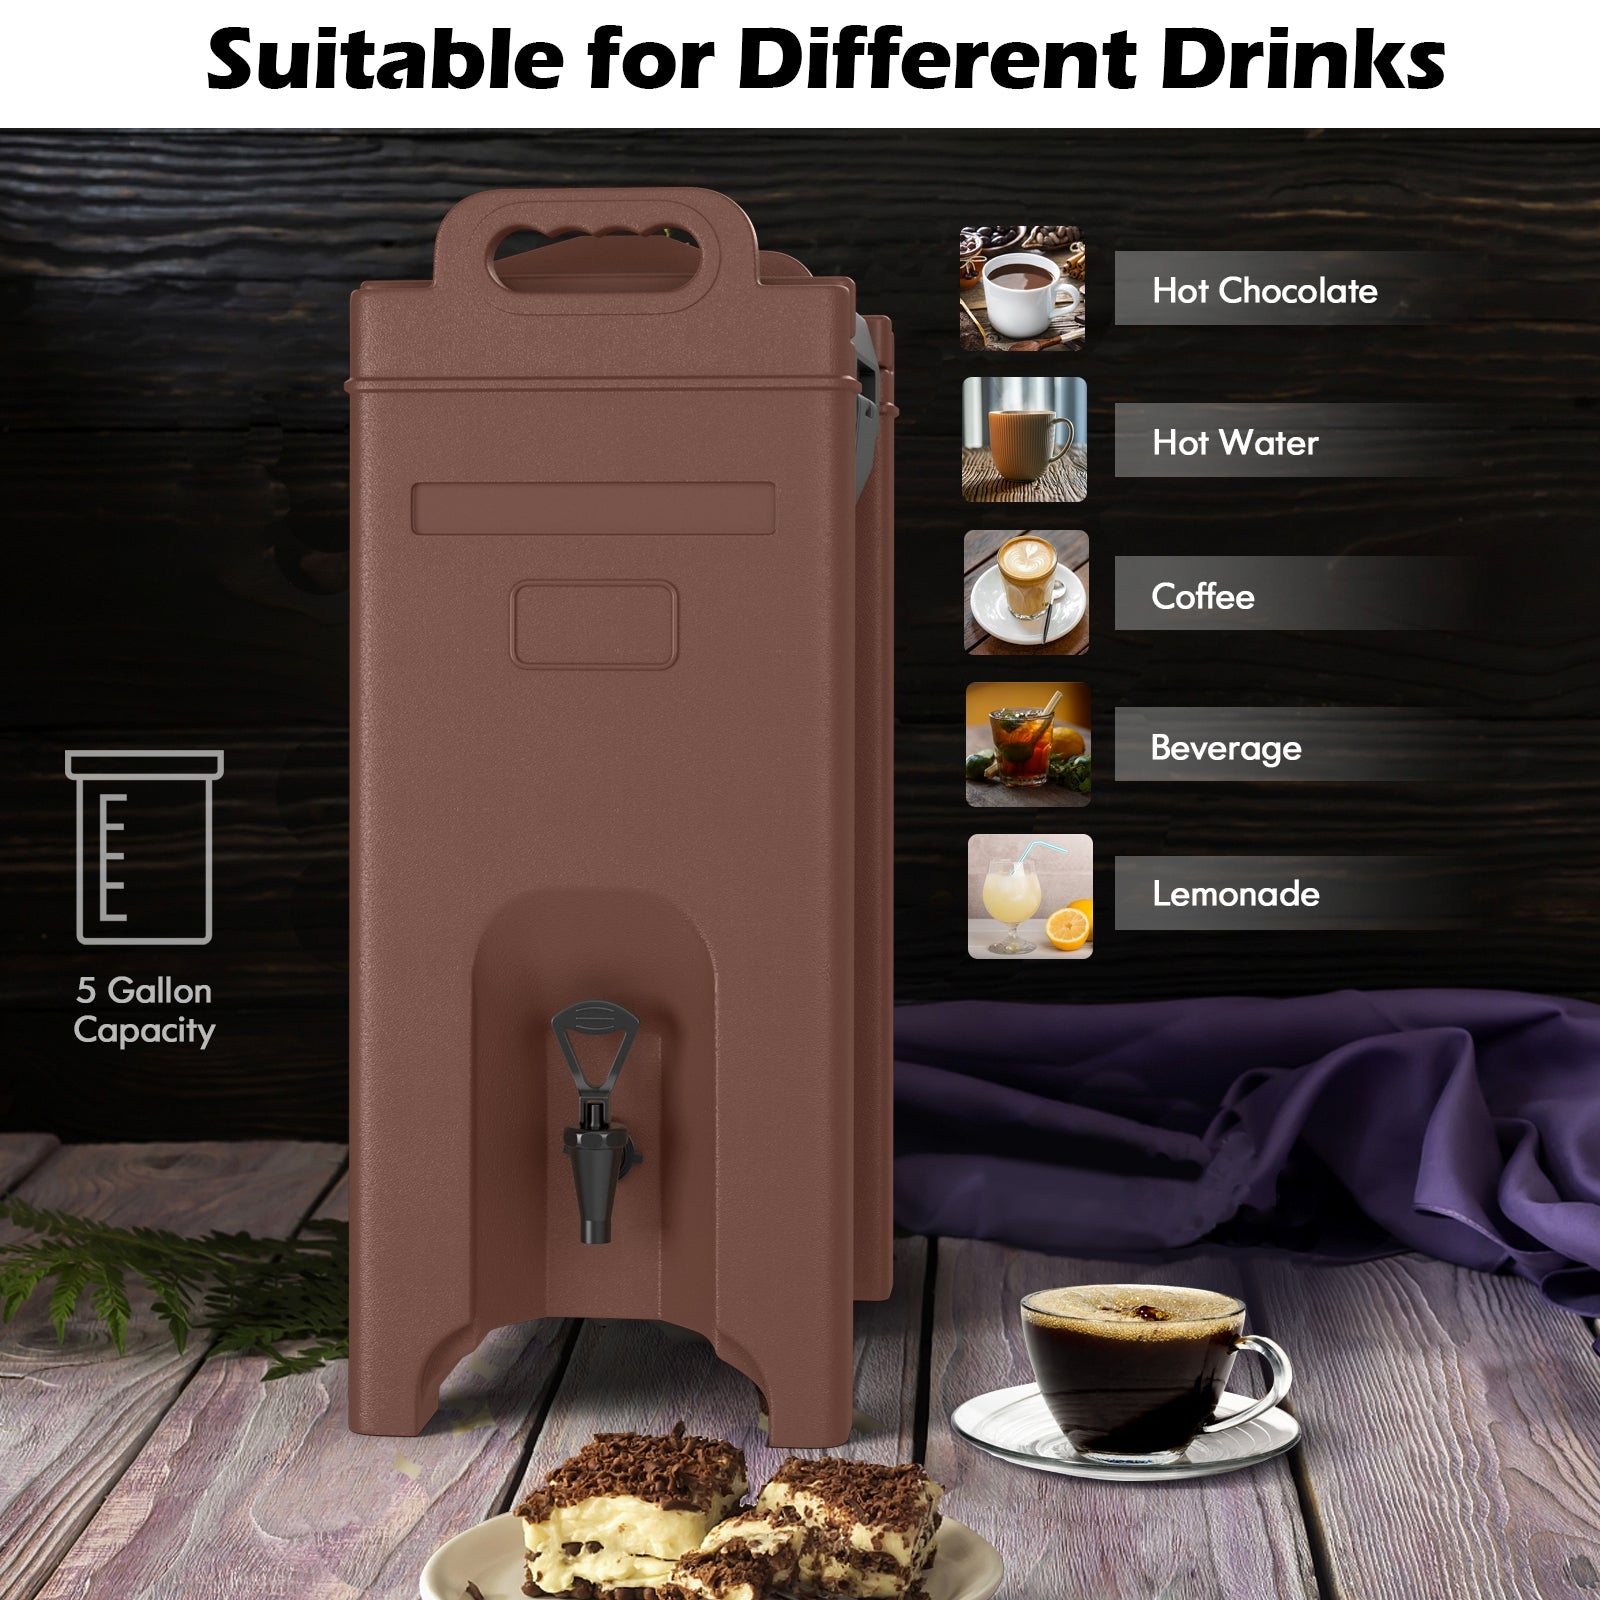 5 Gallon Insulated Beverage Server Dispenser - Gallery Canada